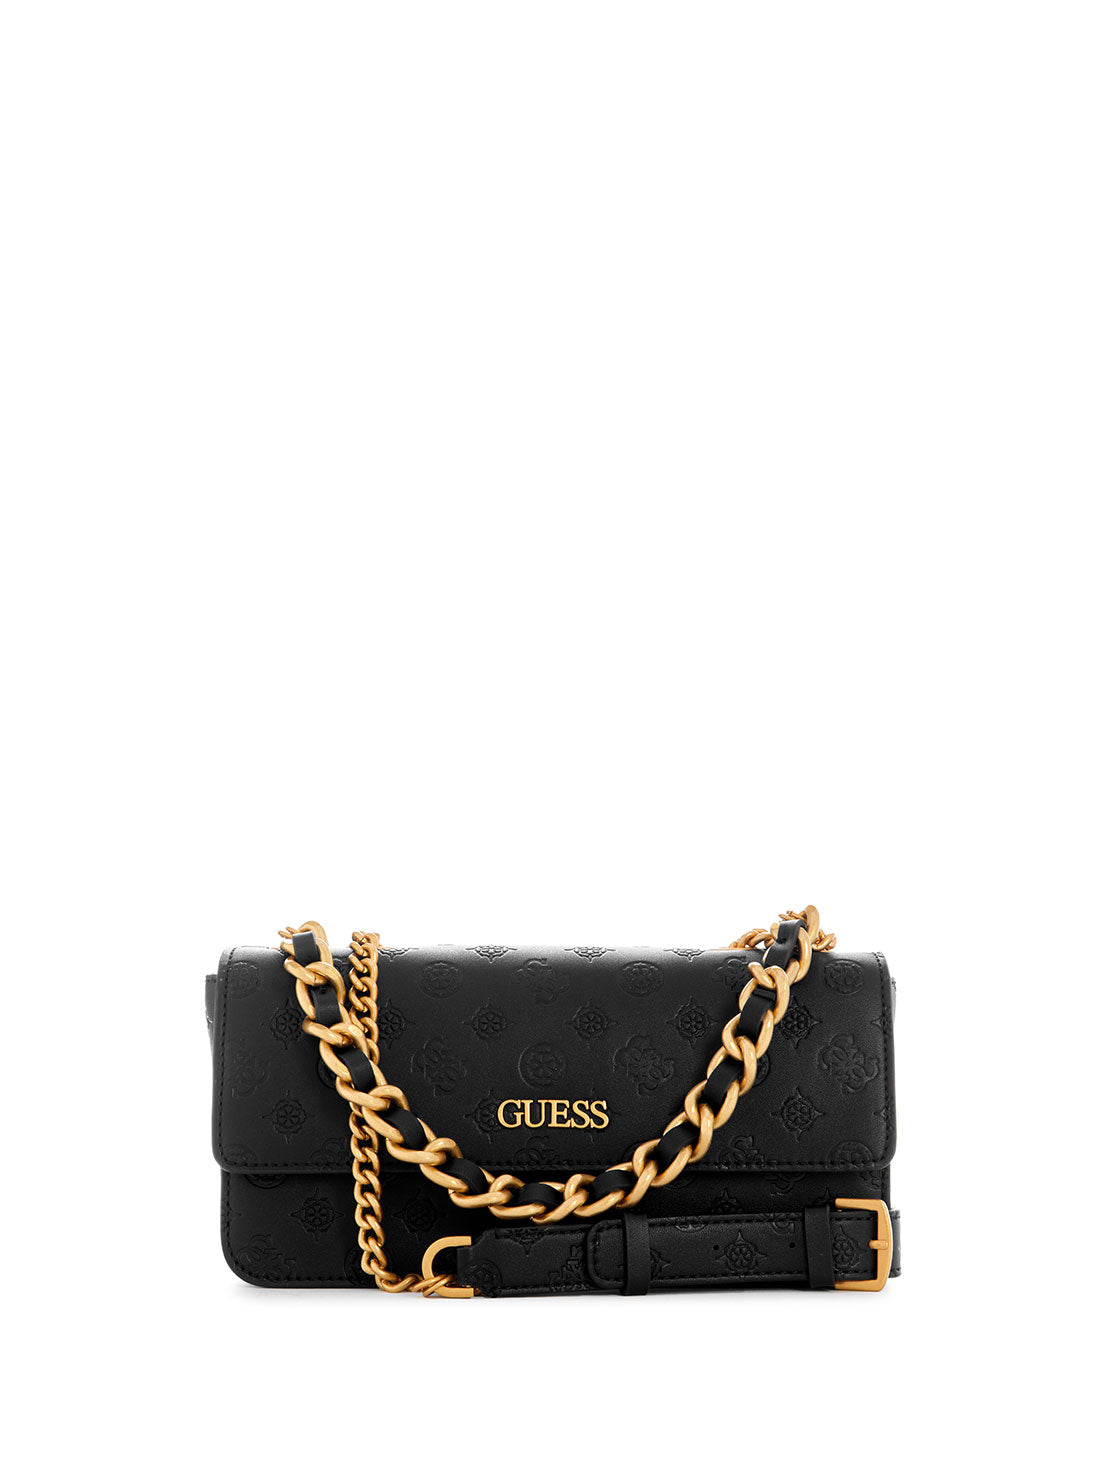 guess handbag, Satchel, Brand new Light Rose color, Comes with adjustable  strap | eBay